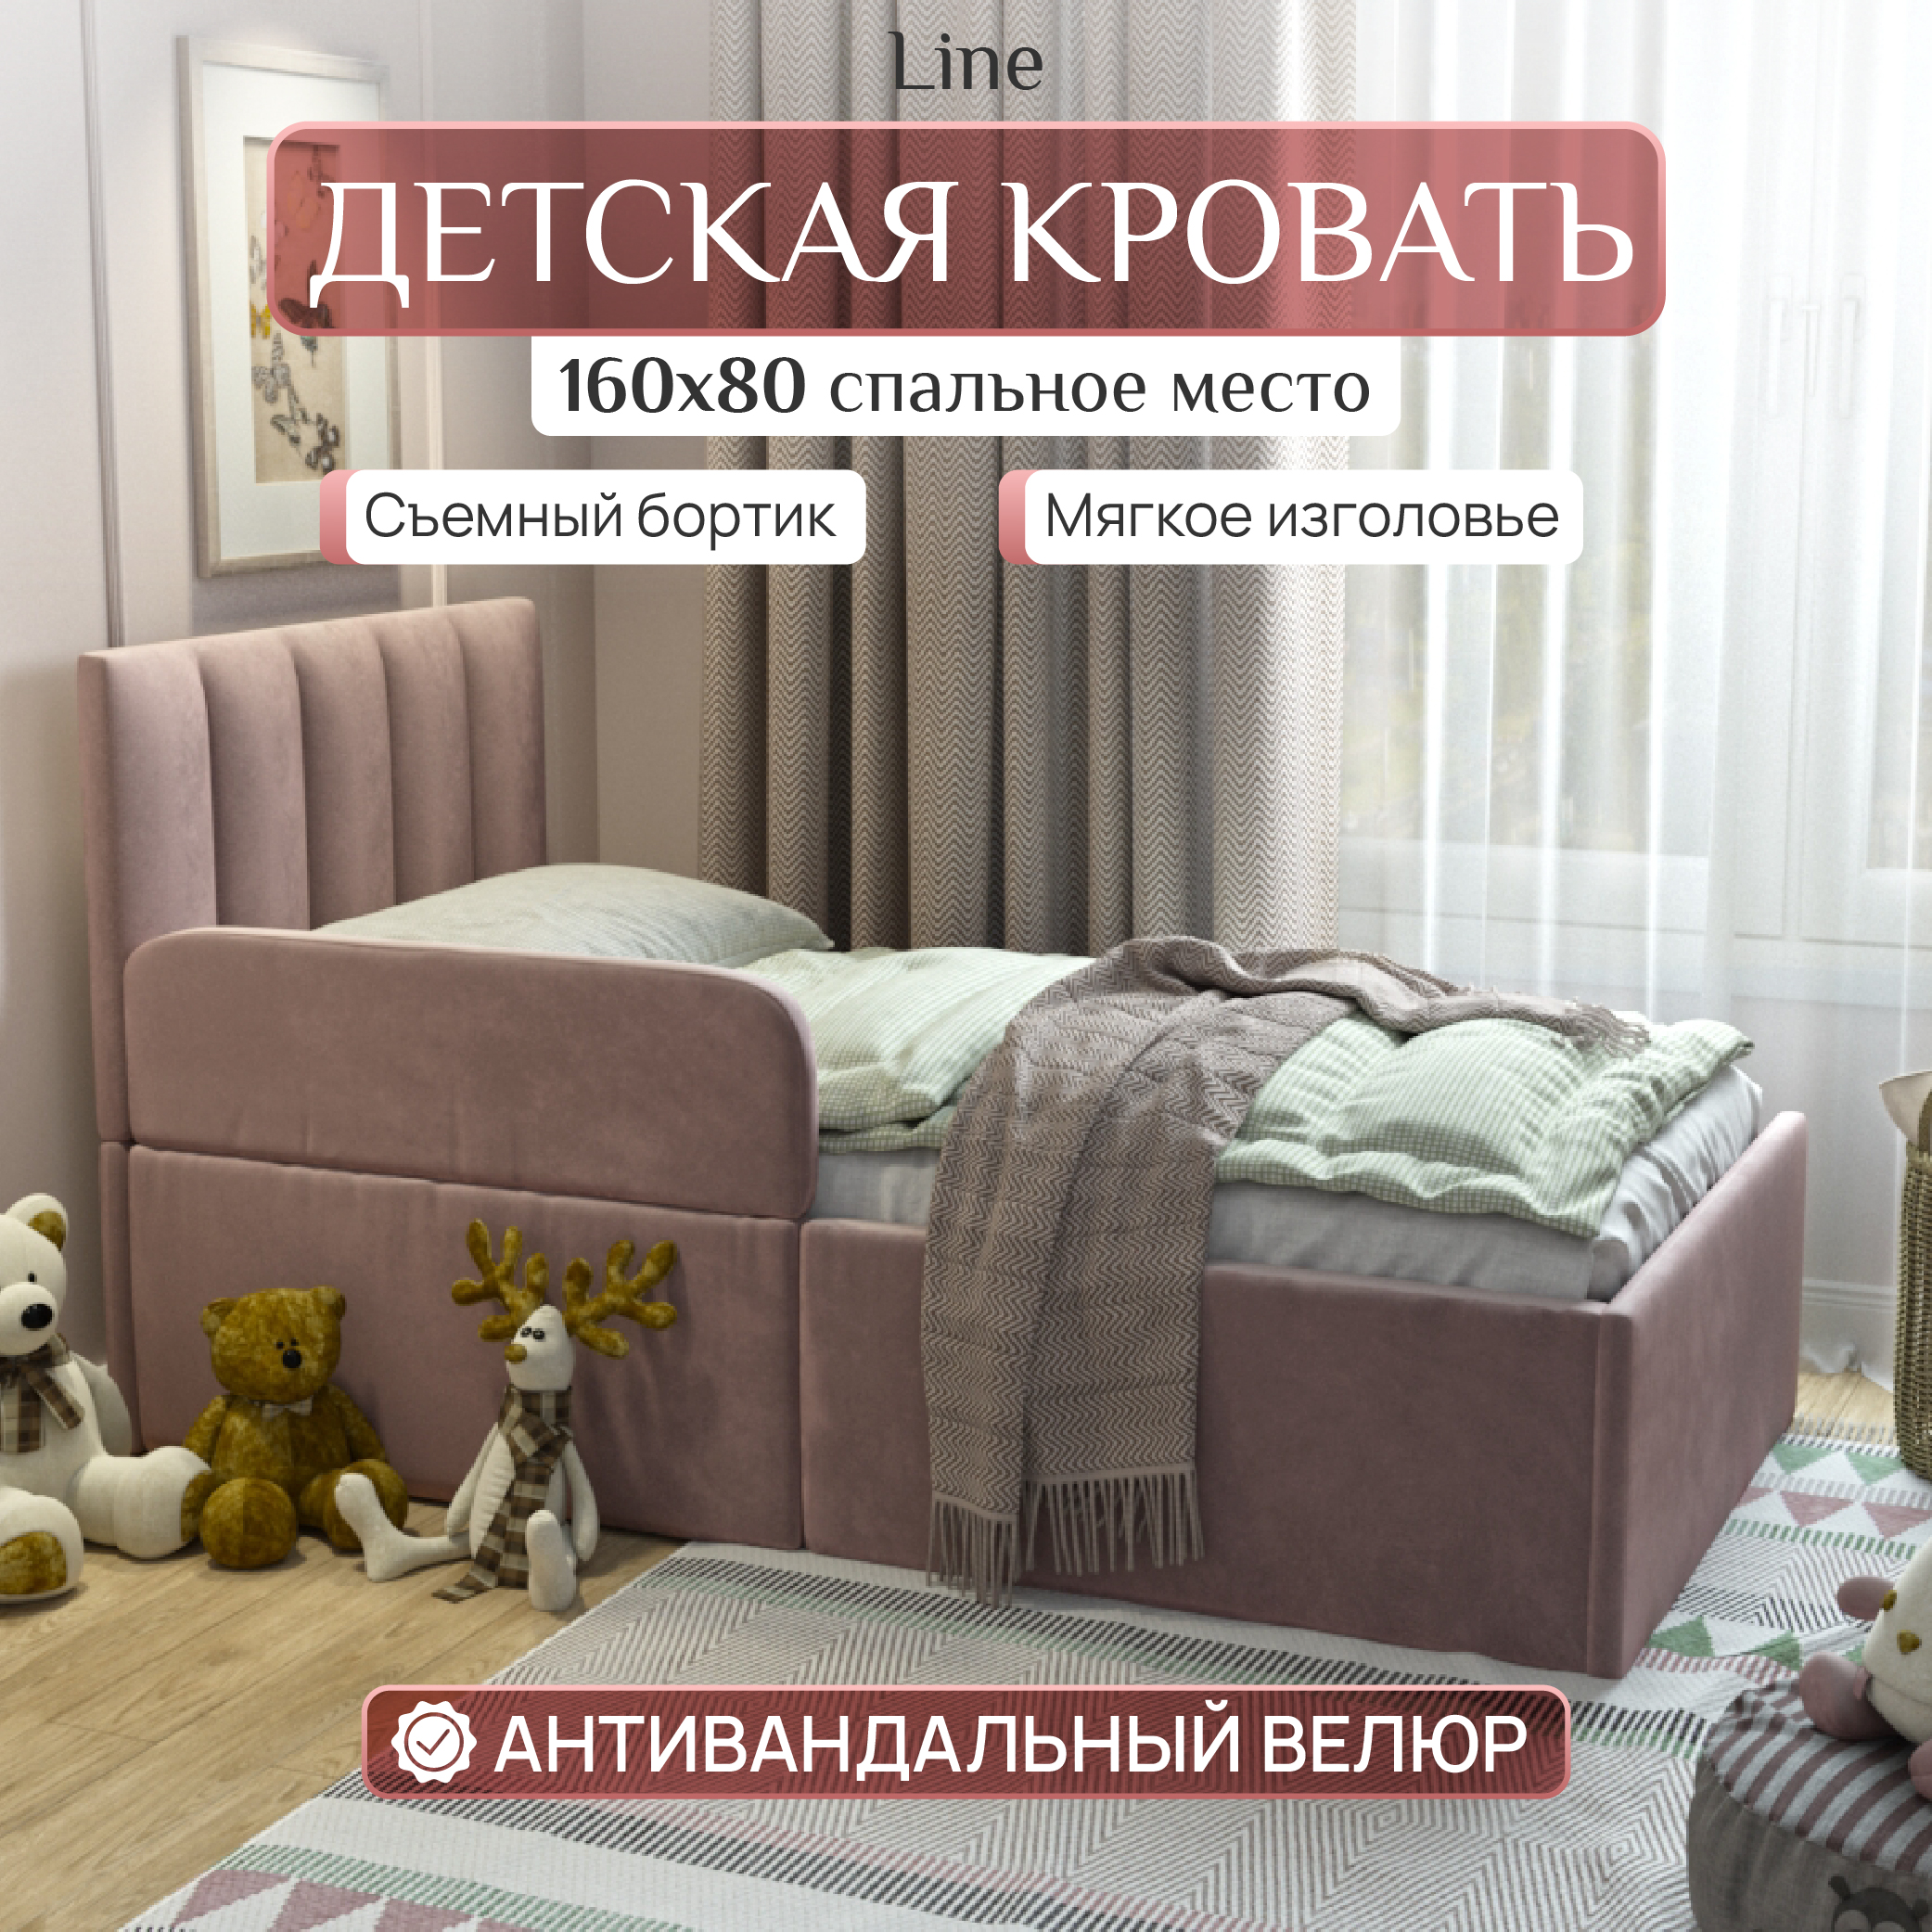 Детская кровать SleepAngel Line 160x80 см, с бортиком для детей от 3-х лет, Розовый детская кровать sweet sofa 180х90 с бортиком натуральный